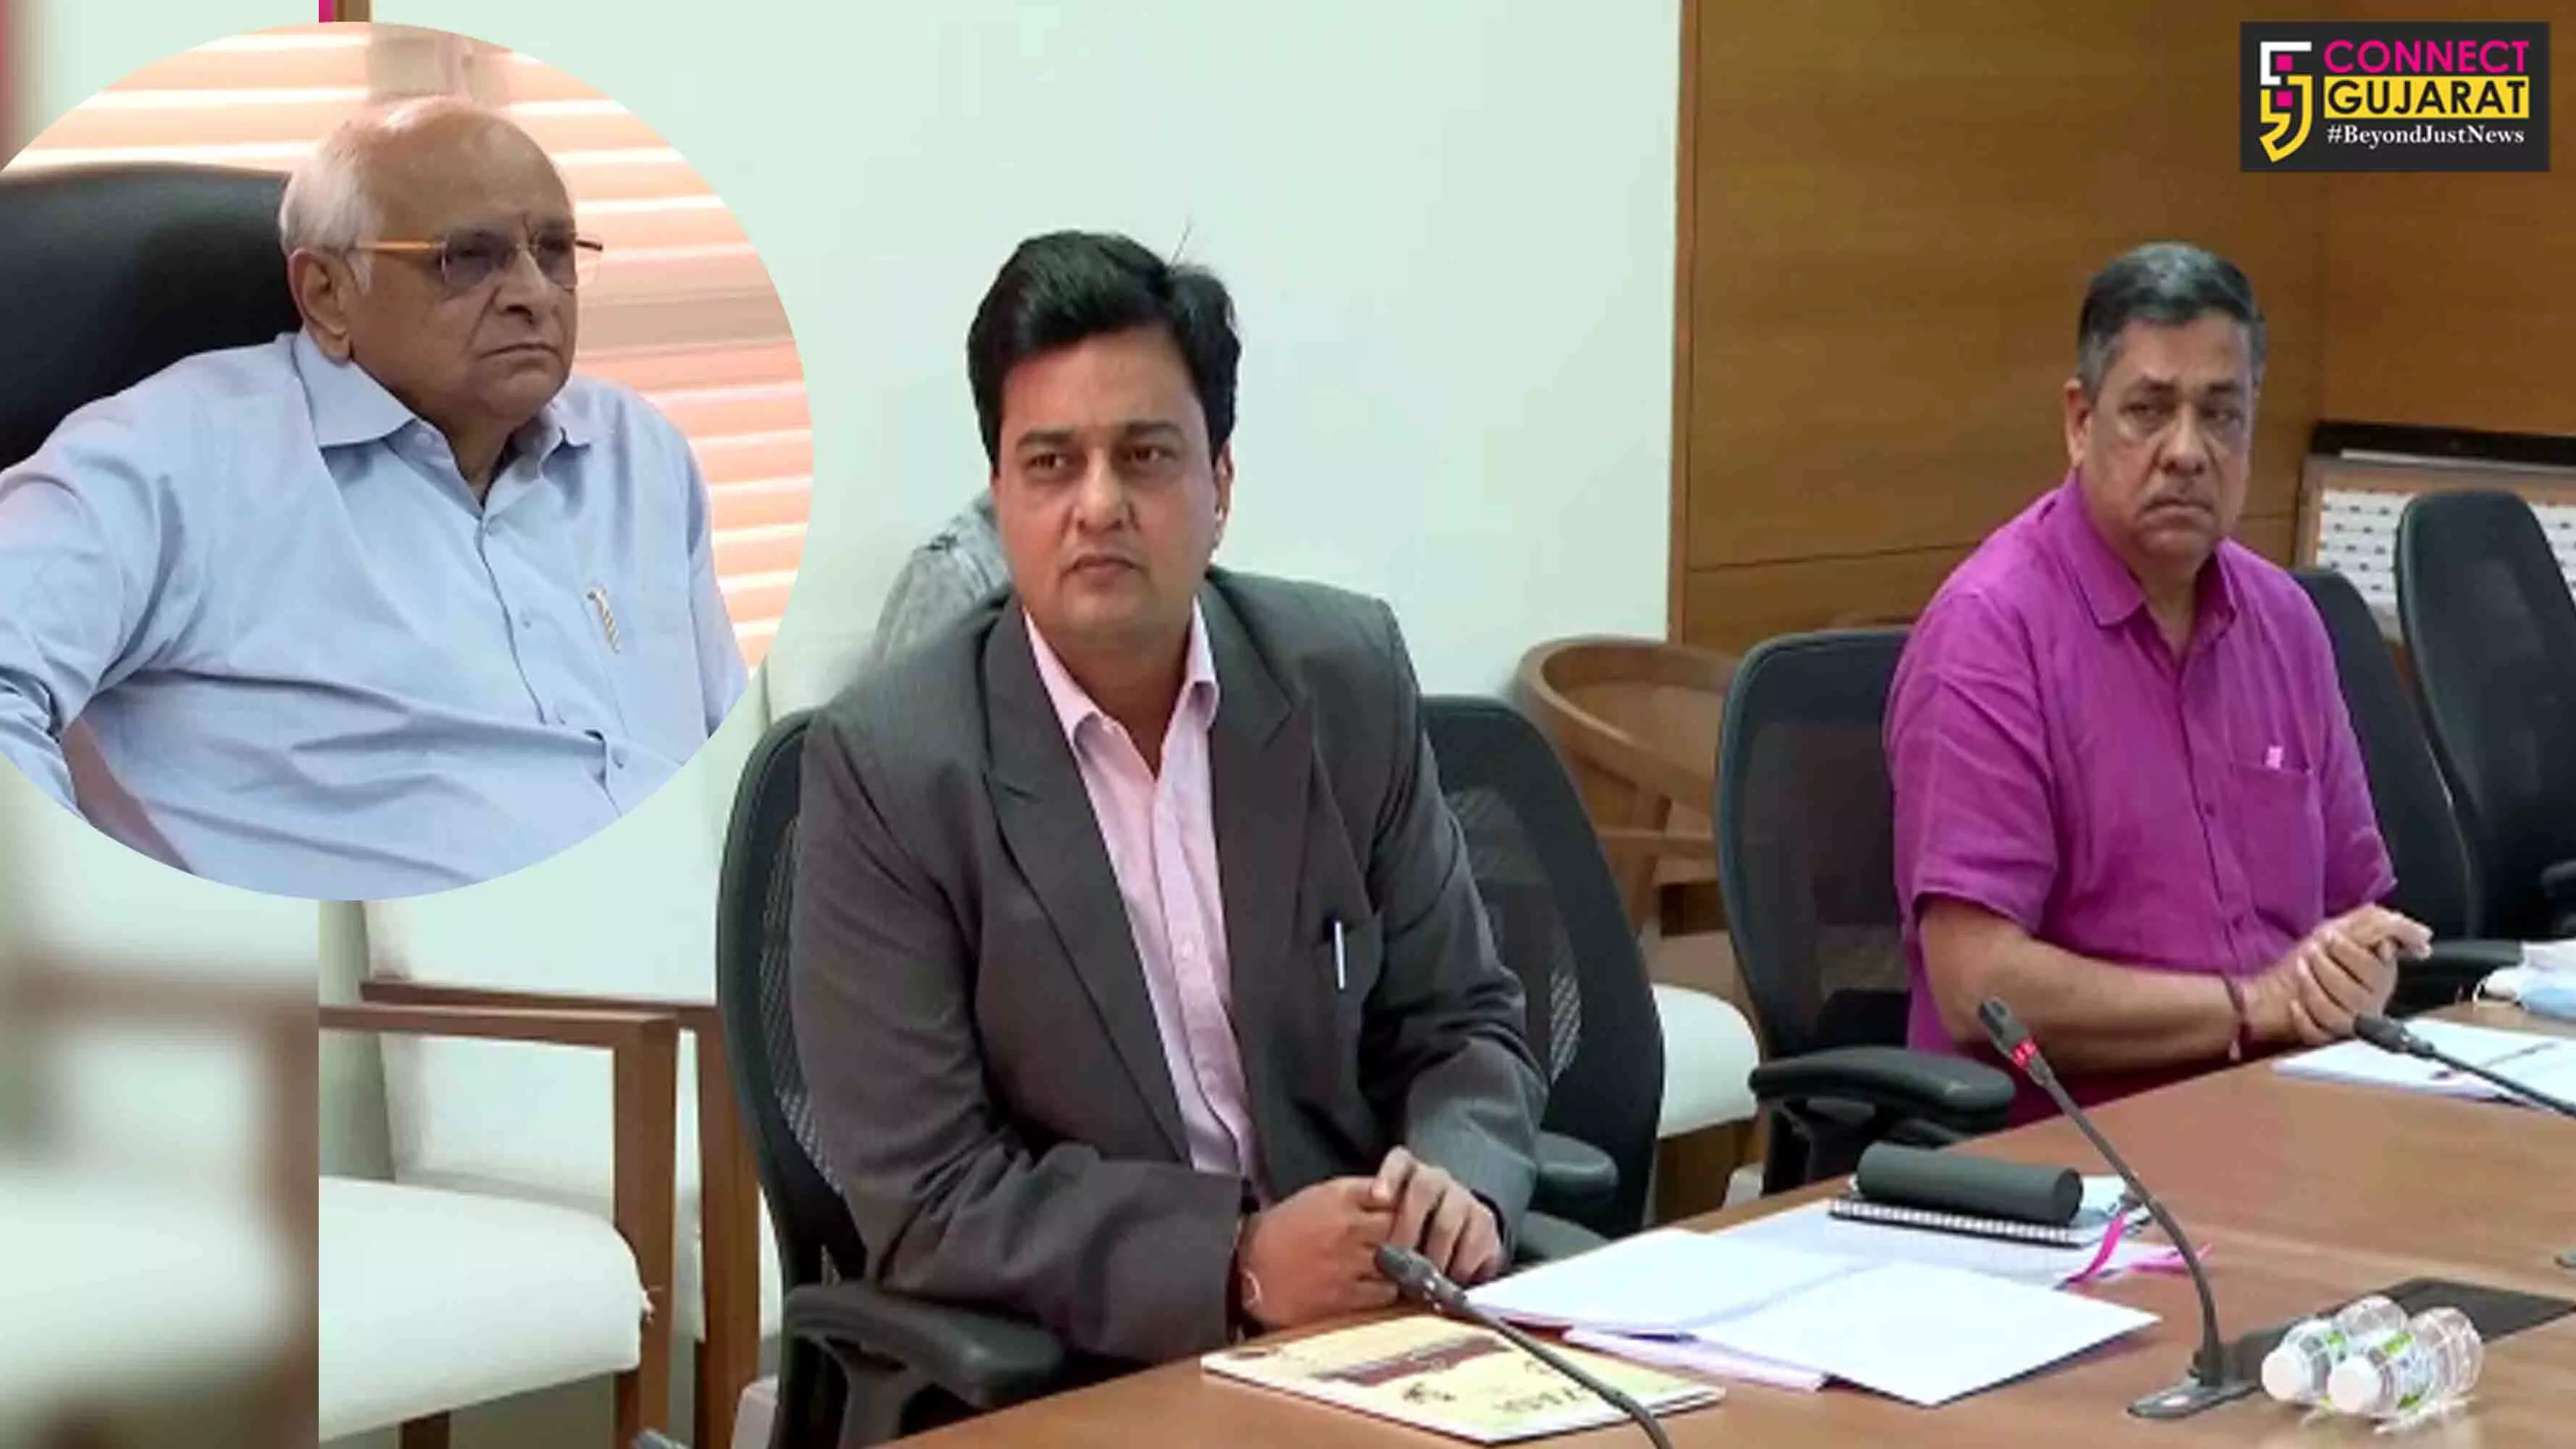 ગાંધીનગર : મુખ્યમંત્રી ભૂપેન્દ્ર પટેલની અધ્યક્ષતામાં ગુજરાત પવિત્ર યાત્રાધામ વિકાસ બોર્ડની સમીક્ષા બેઠક યોજાય.